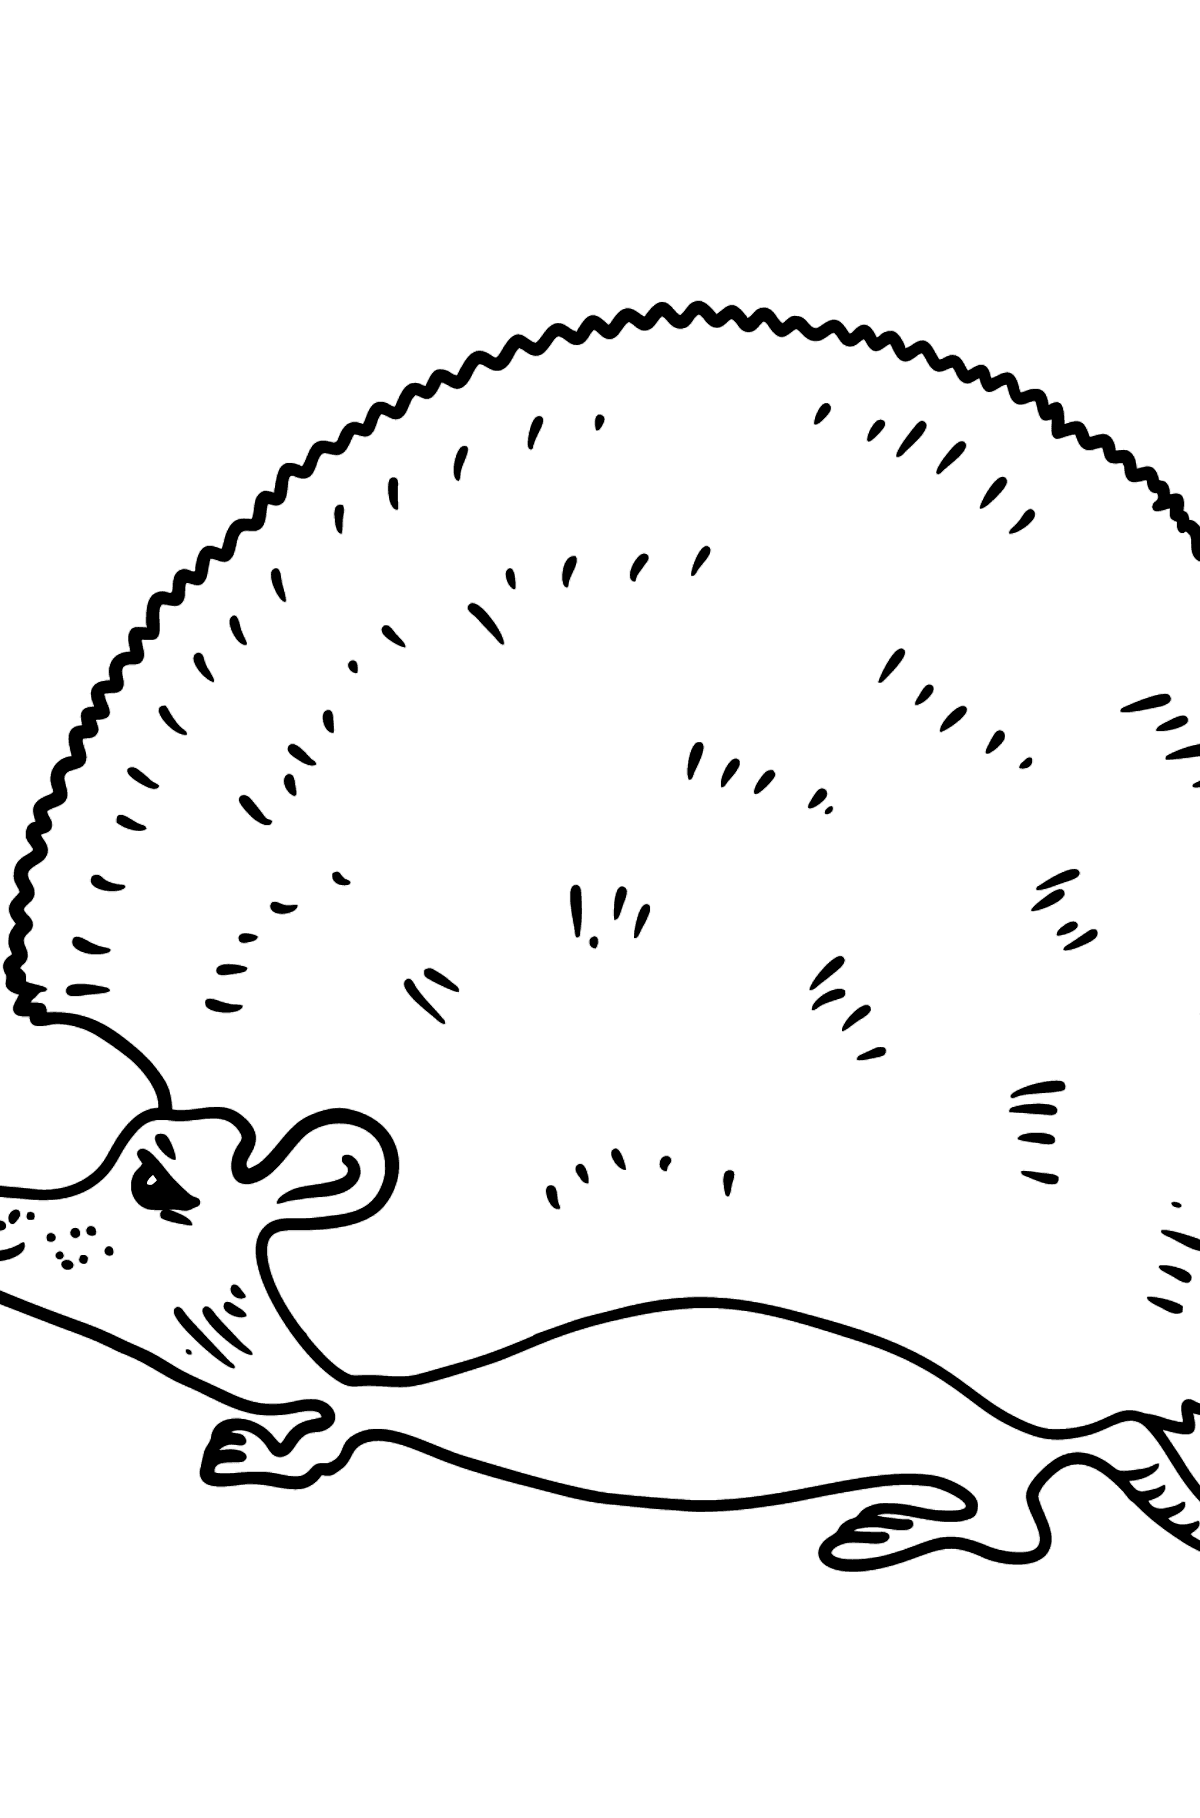 Desenho para colorir do ouriço - Imagens para Colorir para Crianças